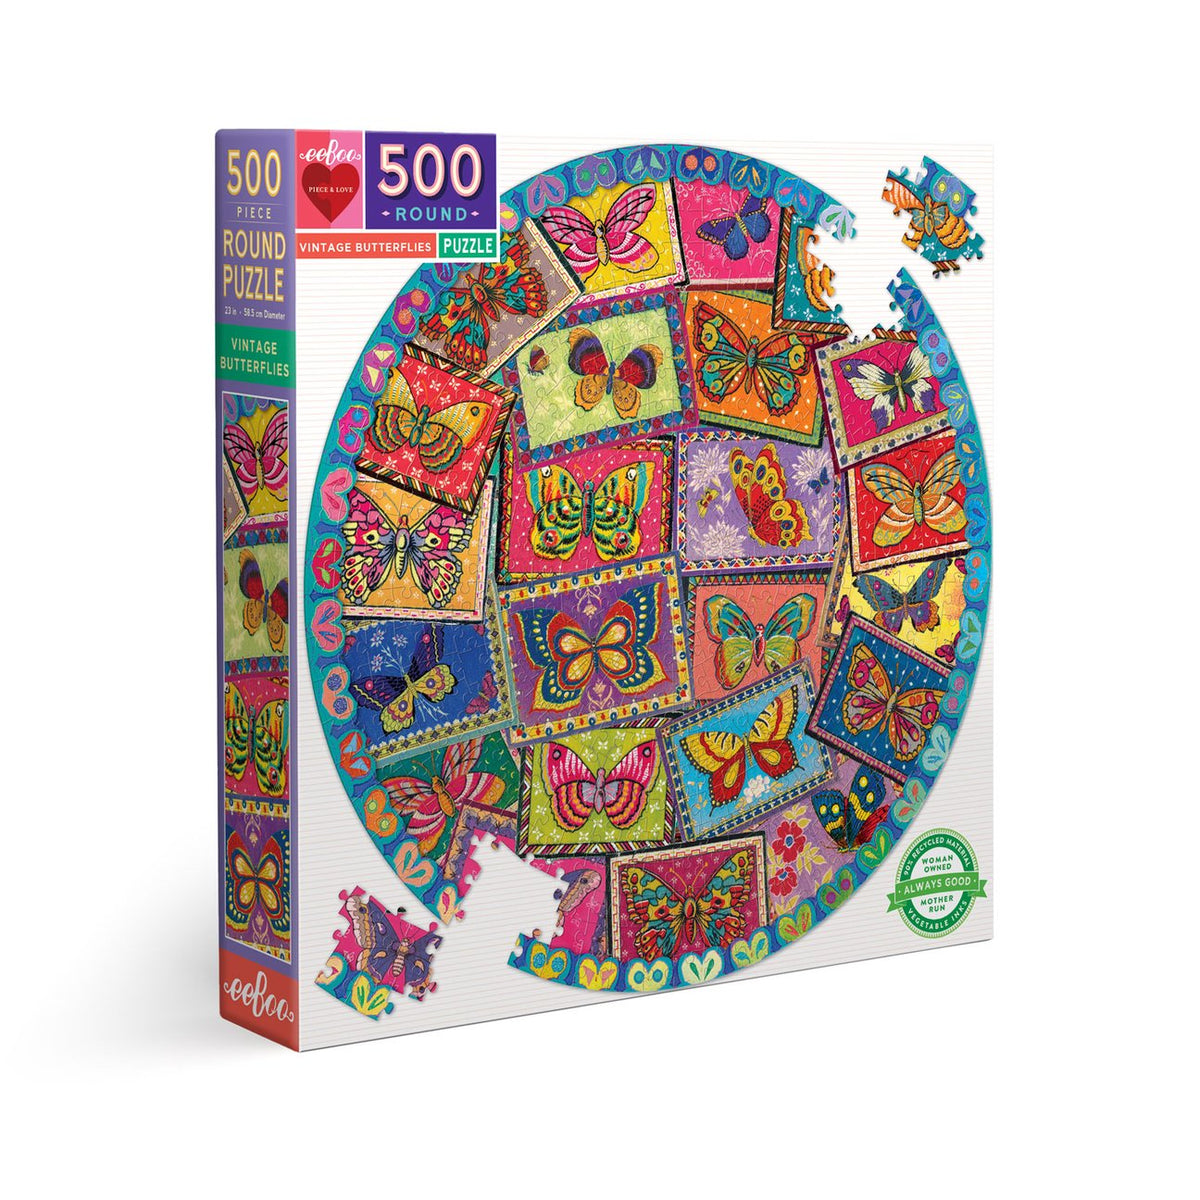 Vintage Butterflies 500 Piece Round Puzzle - Quick Ship - Puzzlicious.com